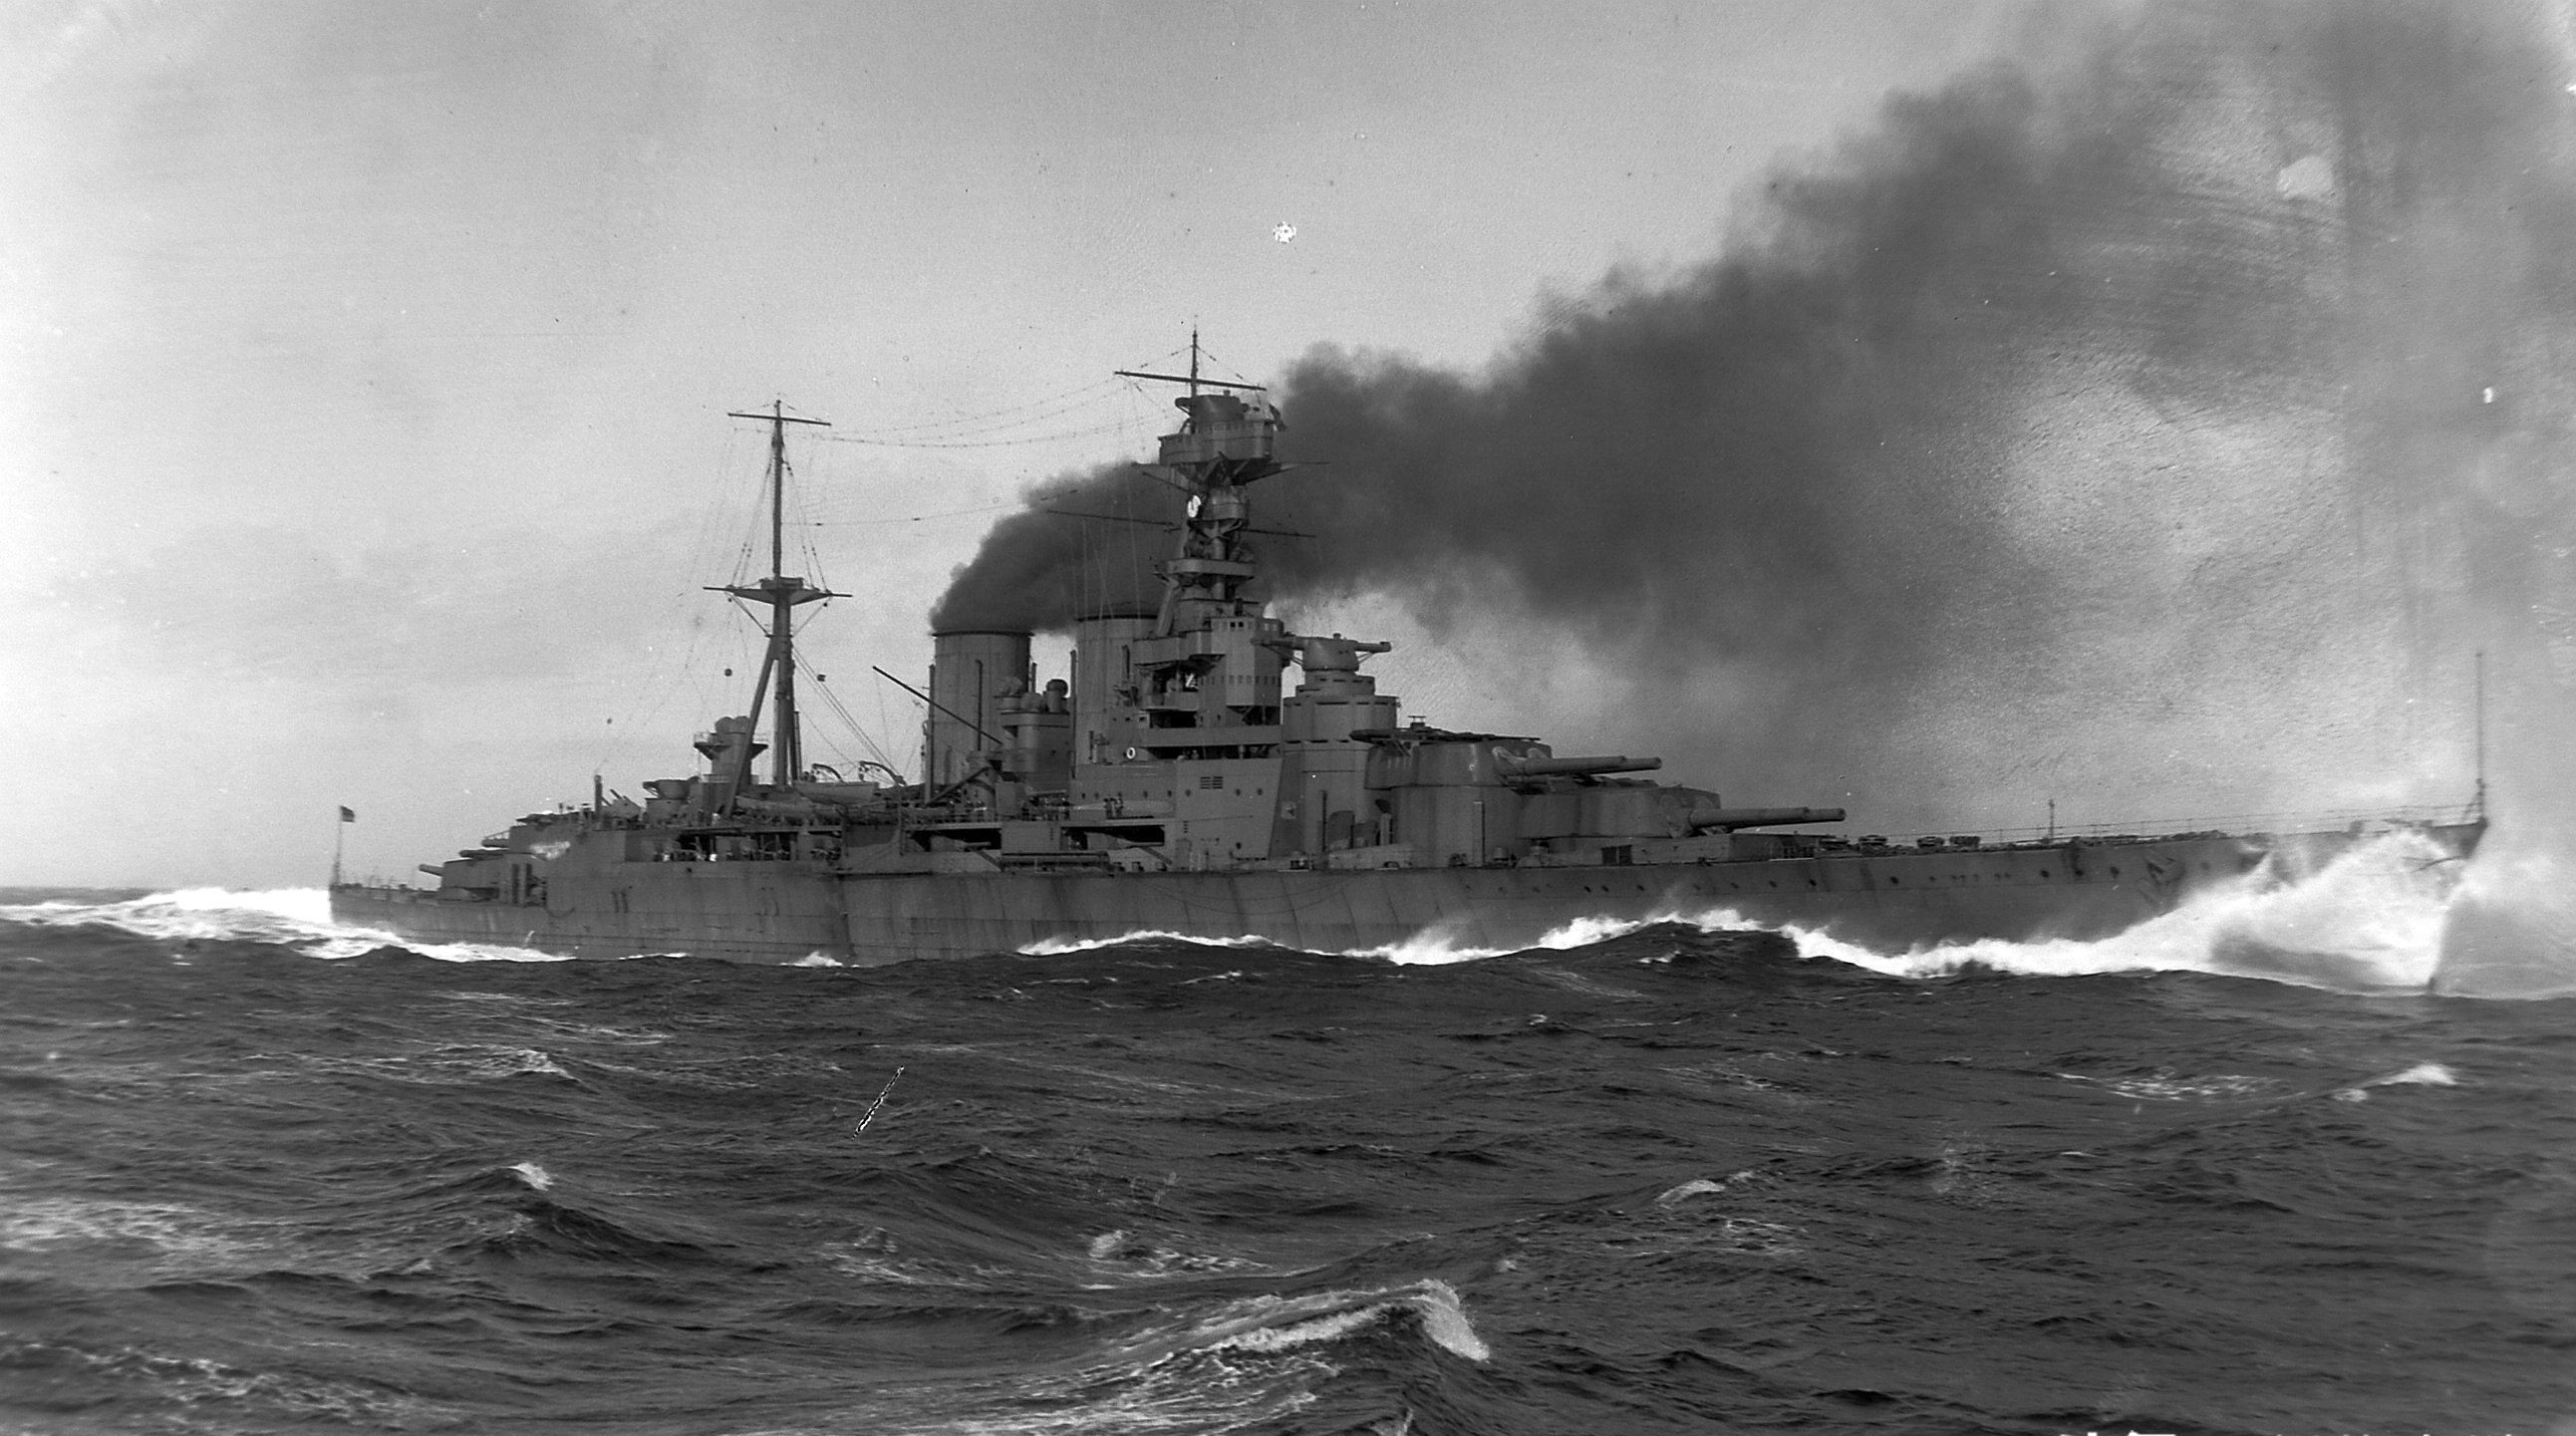 胡德号在皇家海军中是最大,成本最高的主力舰,而且她的航速是当时